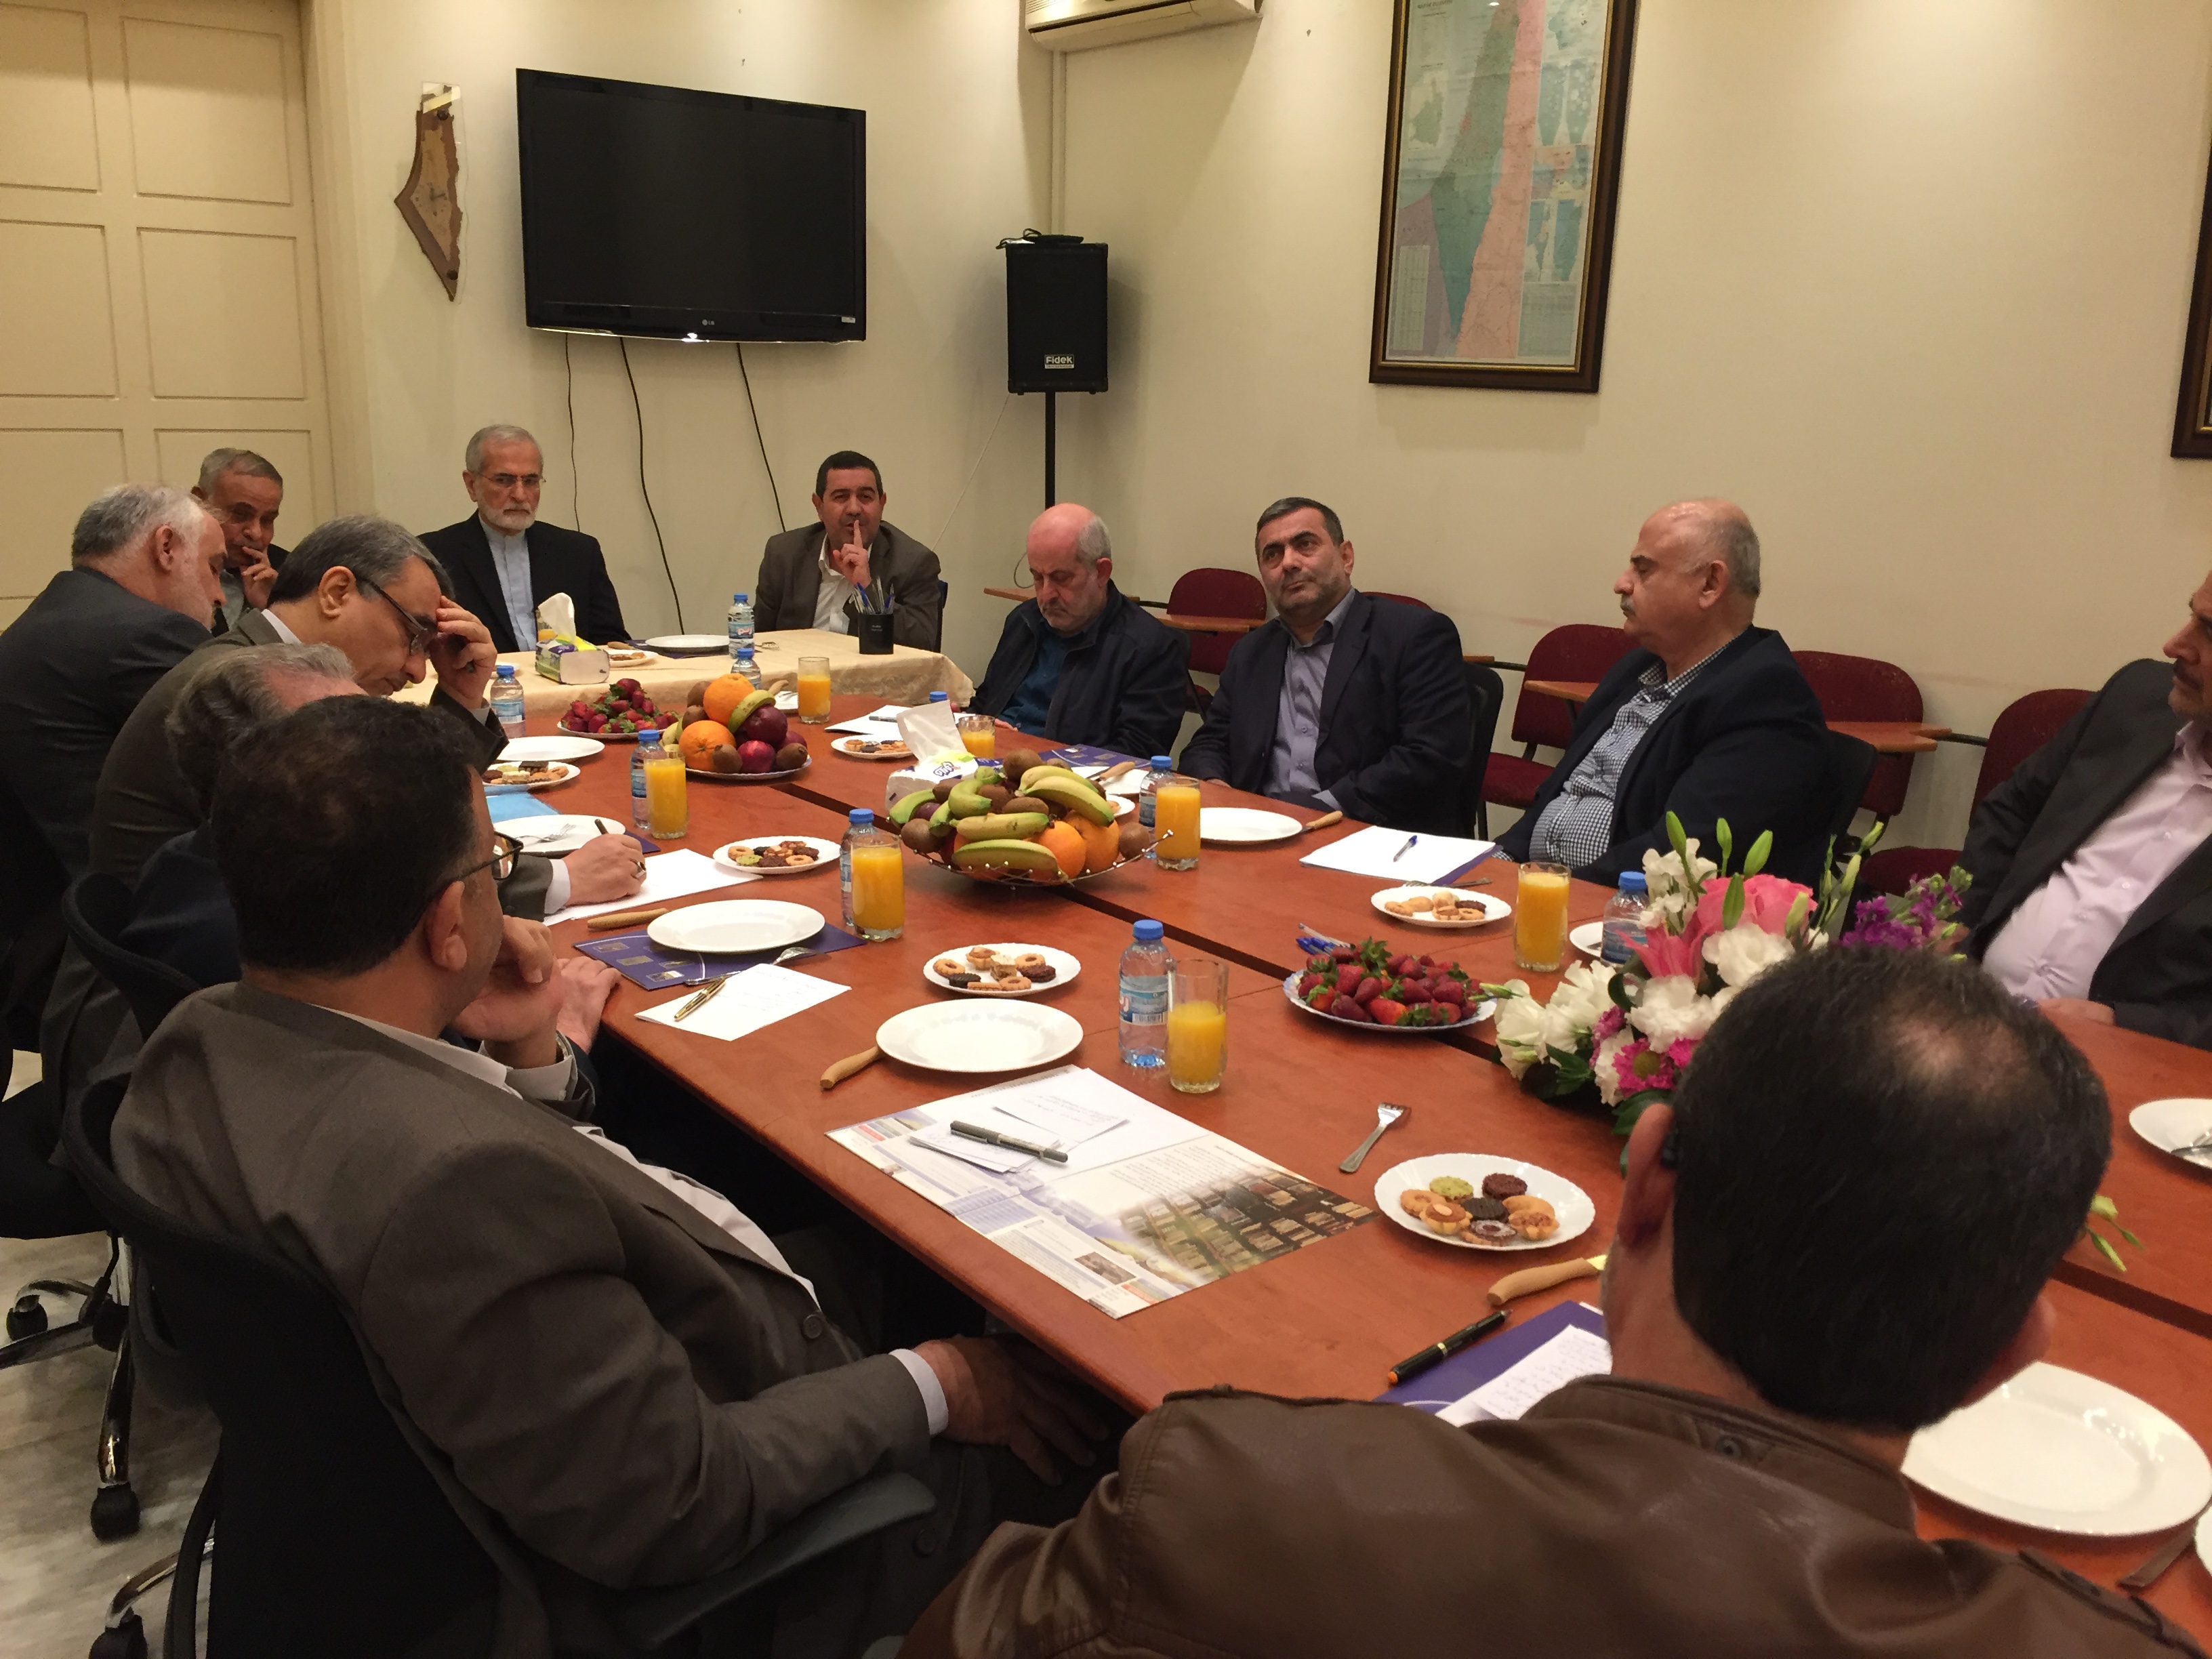 زيارة السيد خرازي إلى مركز باحث
للدراسات الفلسطينية والاستراتيجية